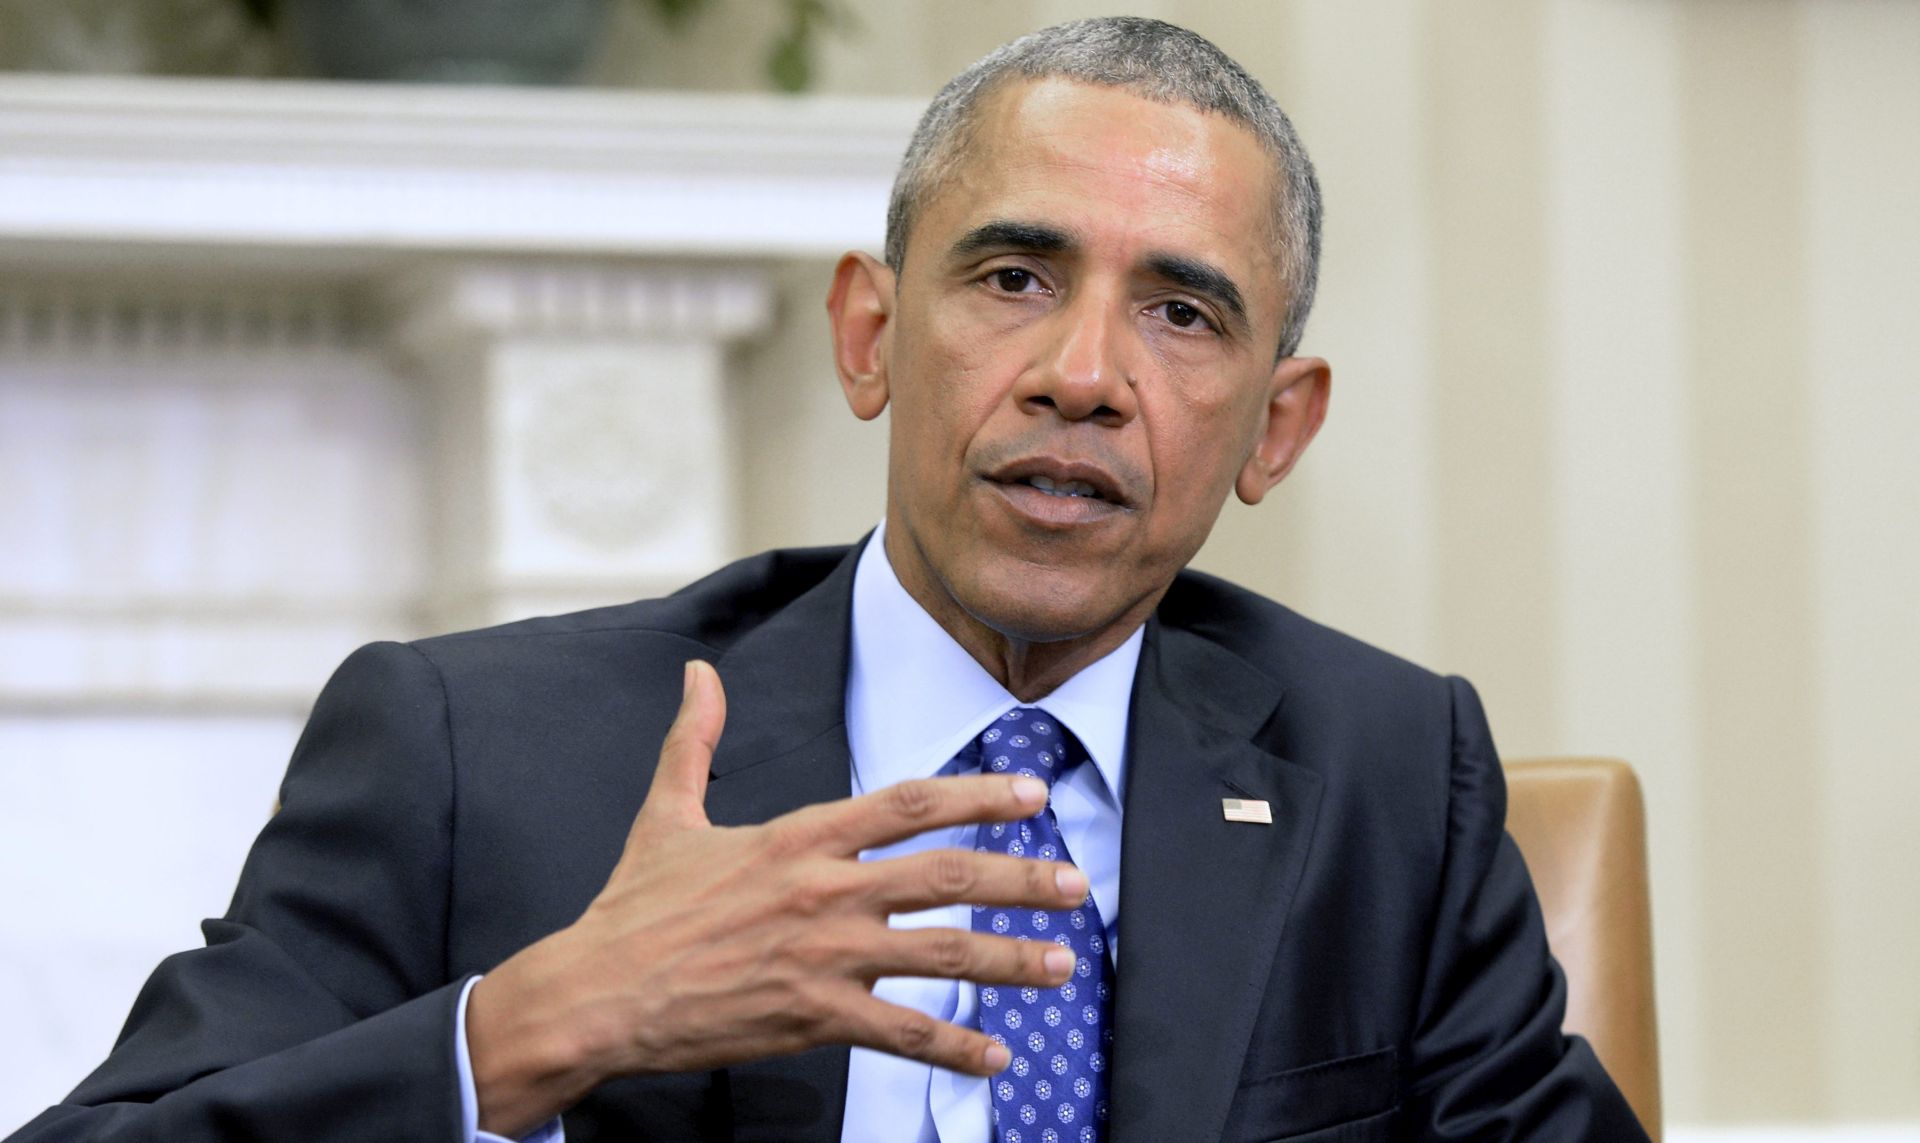 POLITIČKA BURA: Obamine mjere nadzora oružja izazvat će političke i pravne bitke u SAD-u